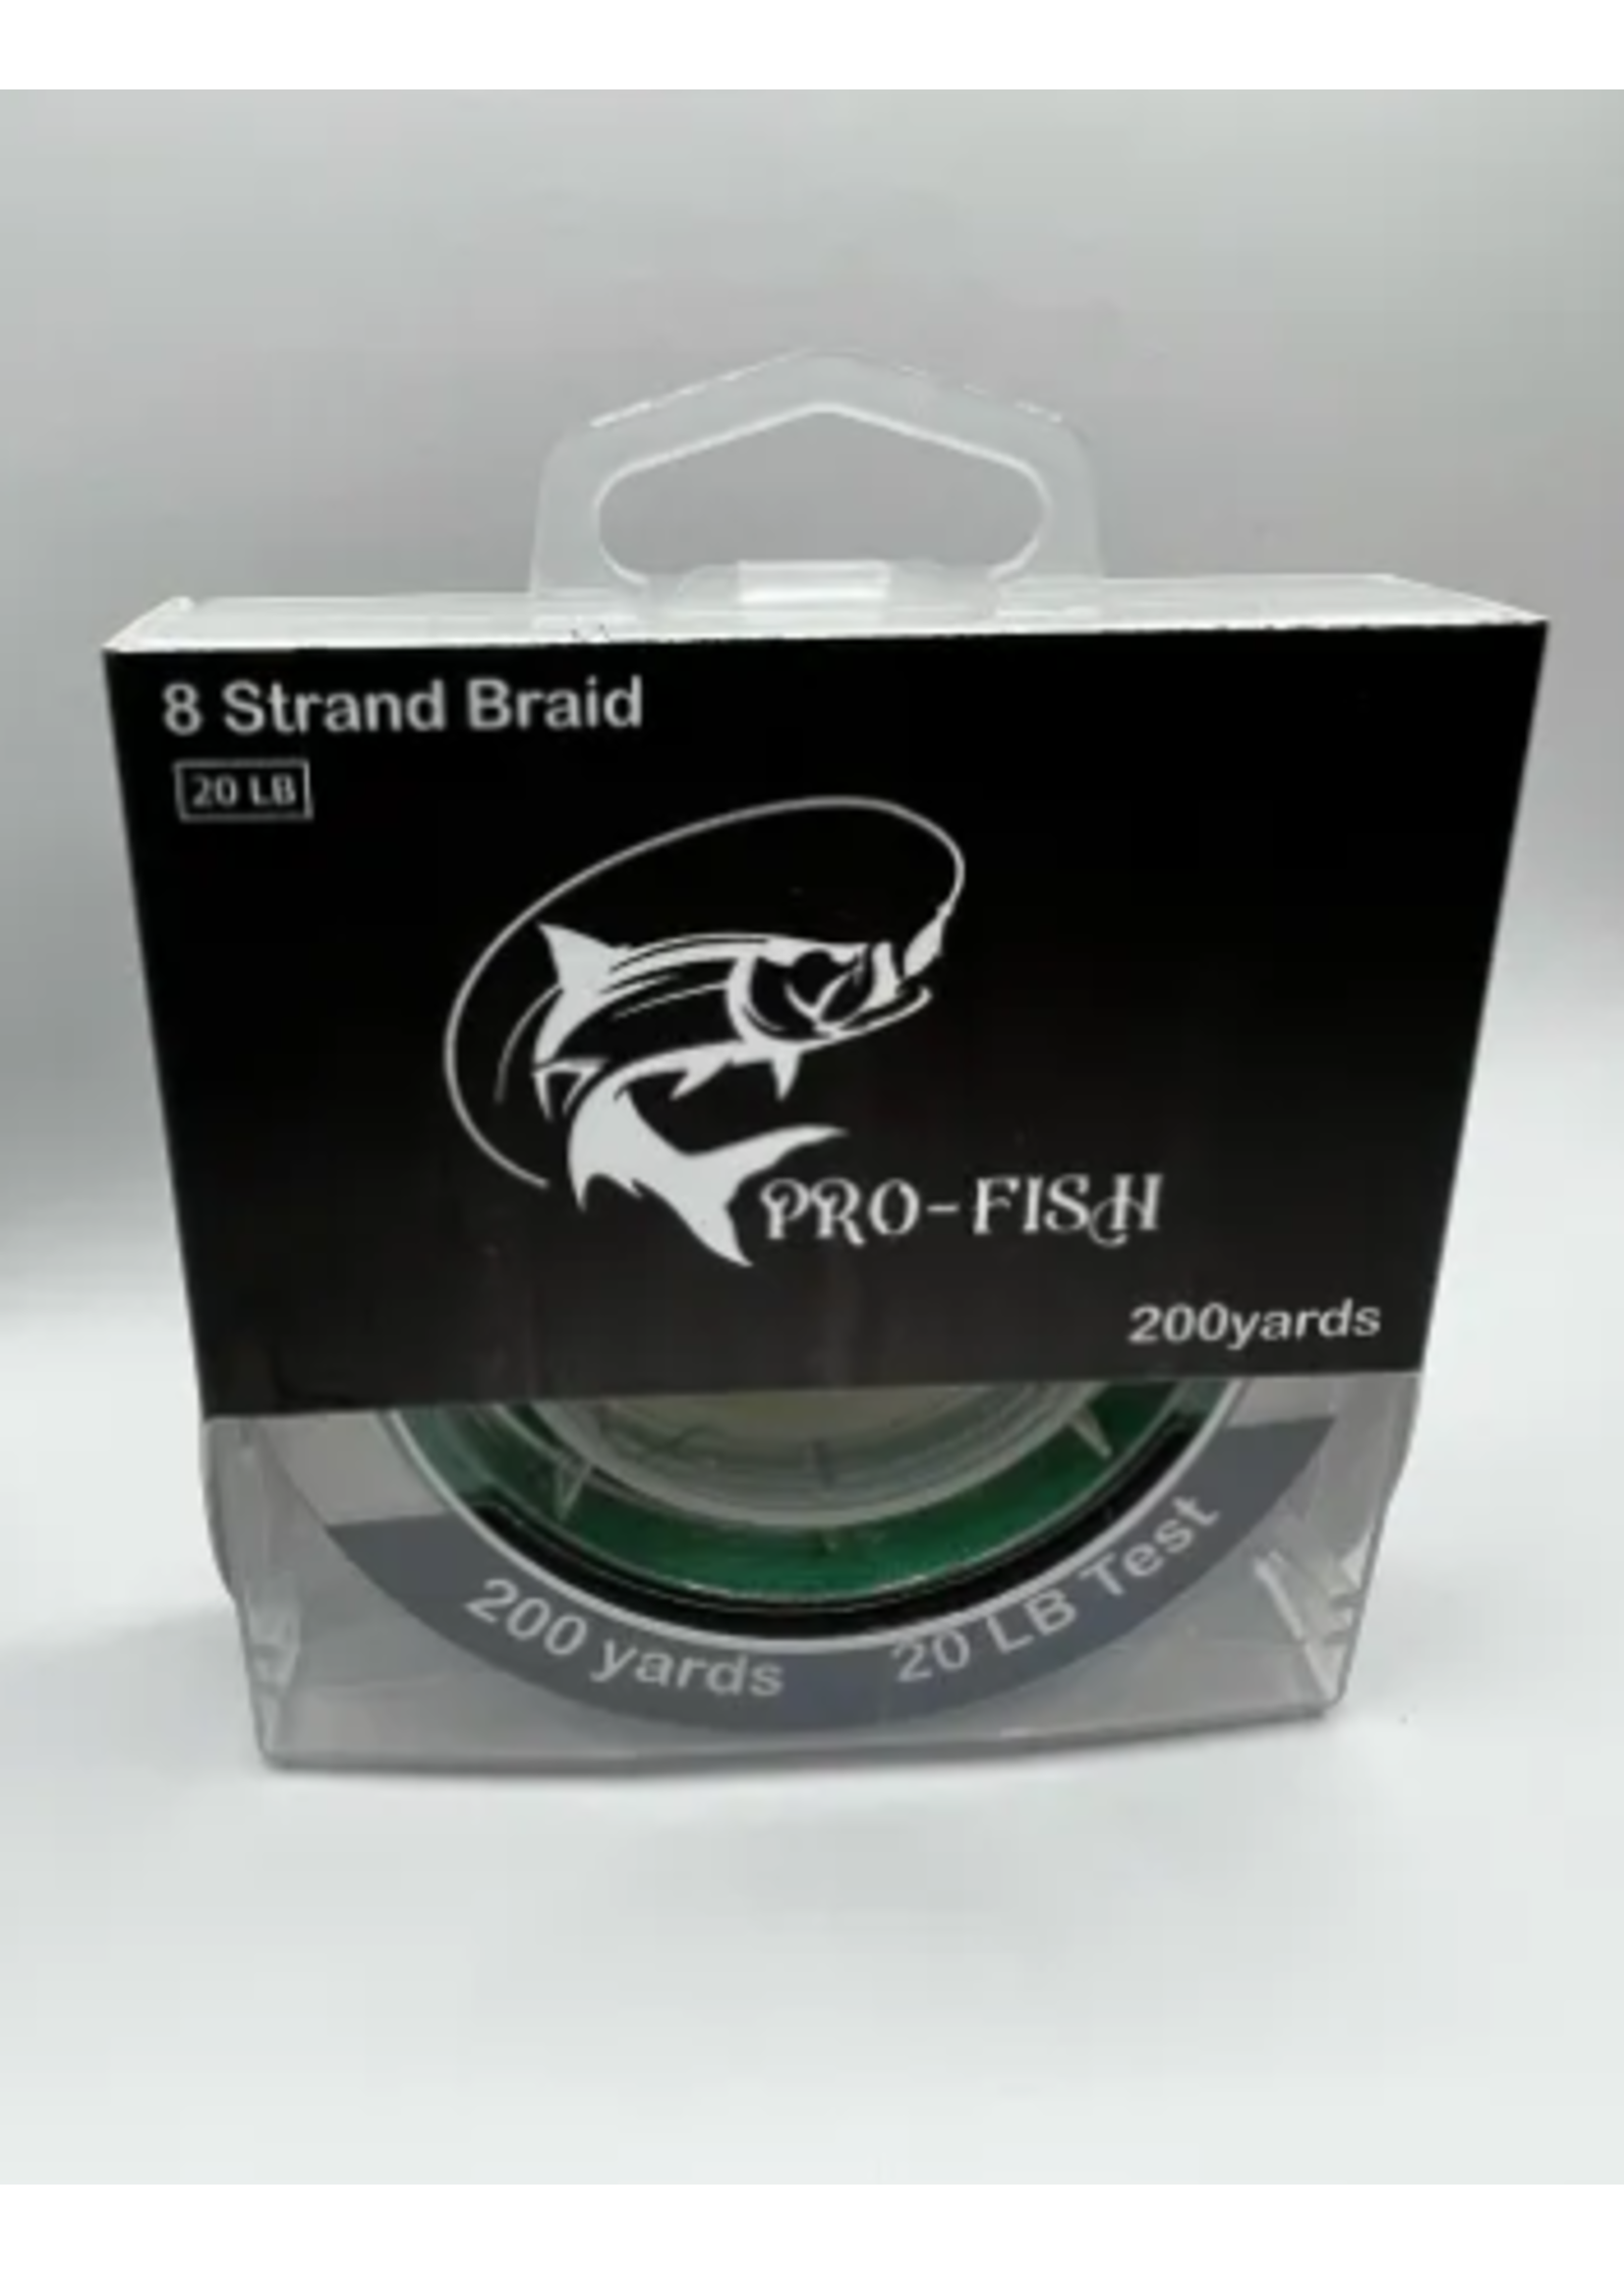 https://cdn.shoplightspeed.com/shops/641096/files/47749883/1652x2313x2/pro-fish-8-strand-braid-15lb-200yds-green.jpg